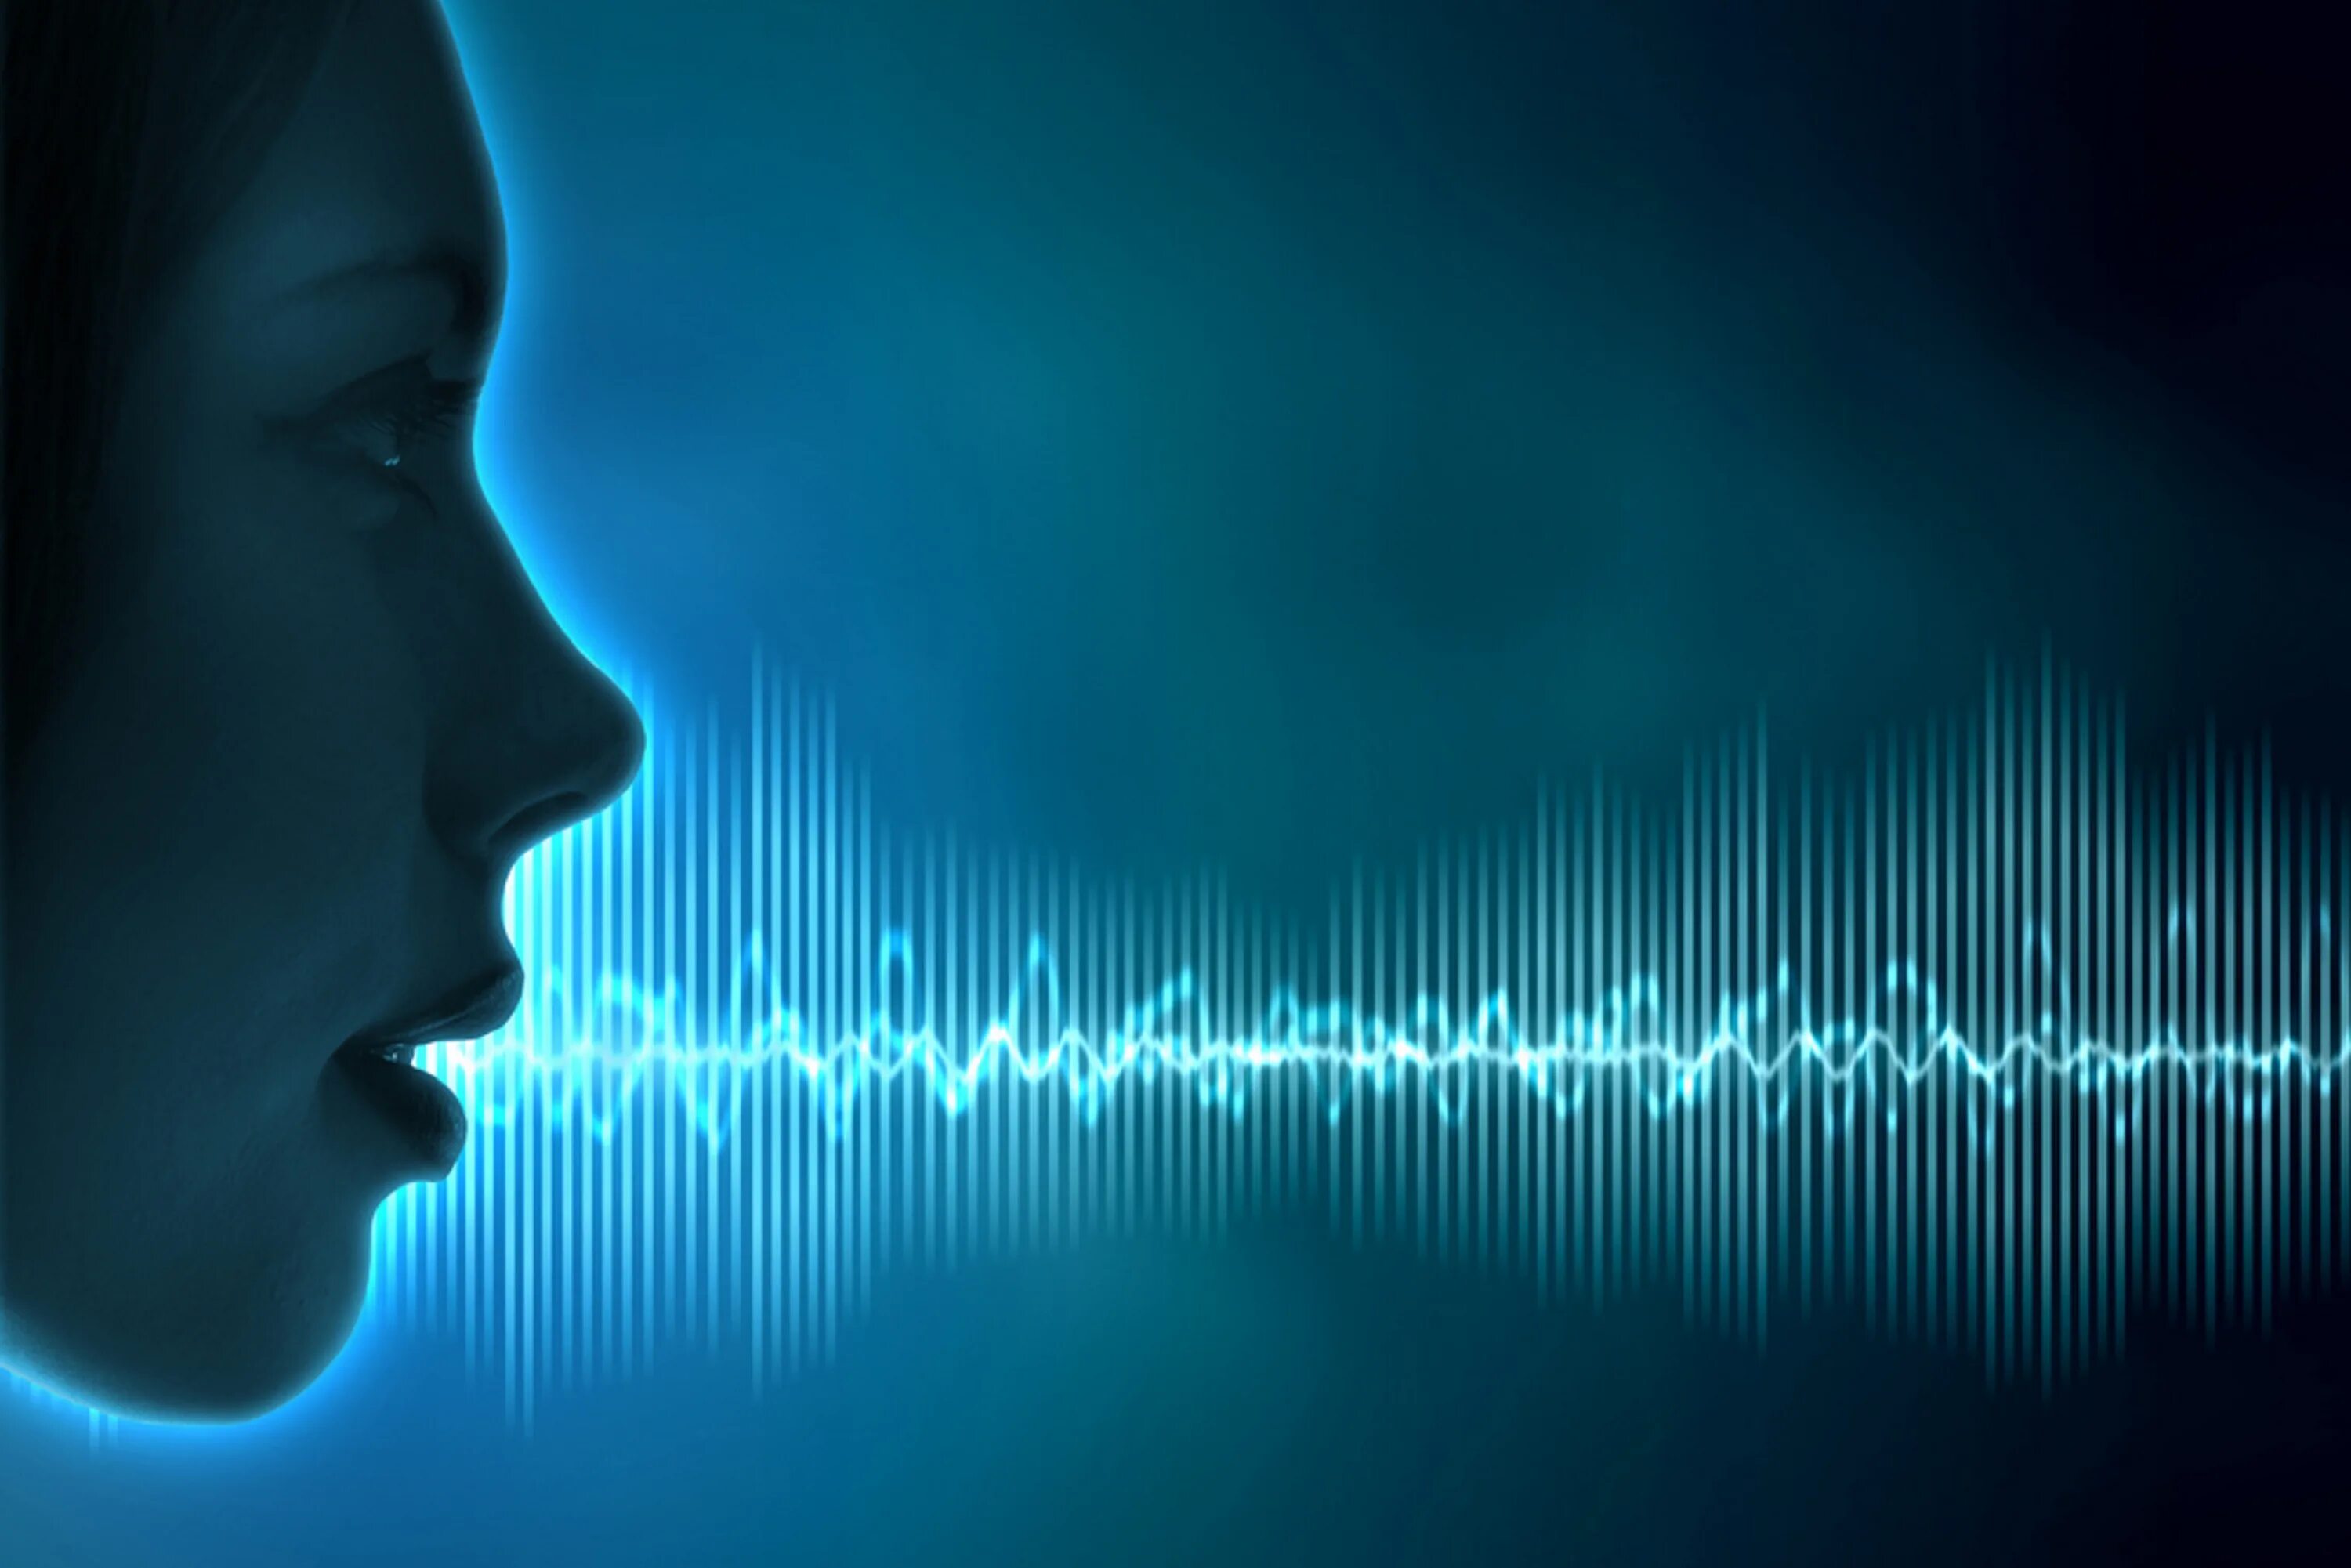 Голос человека. Звуковая волна. Распознавание речи. Голосовая биометрия.